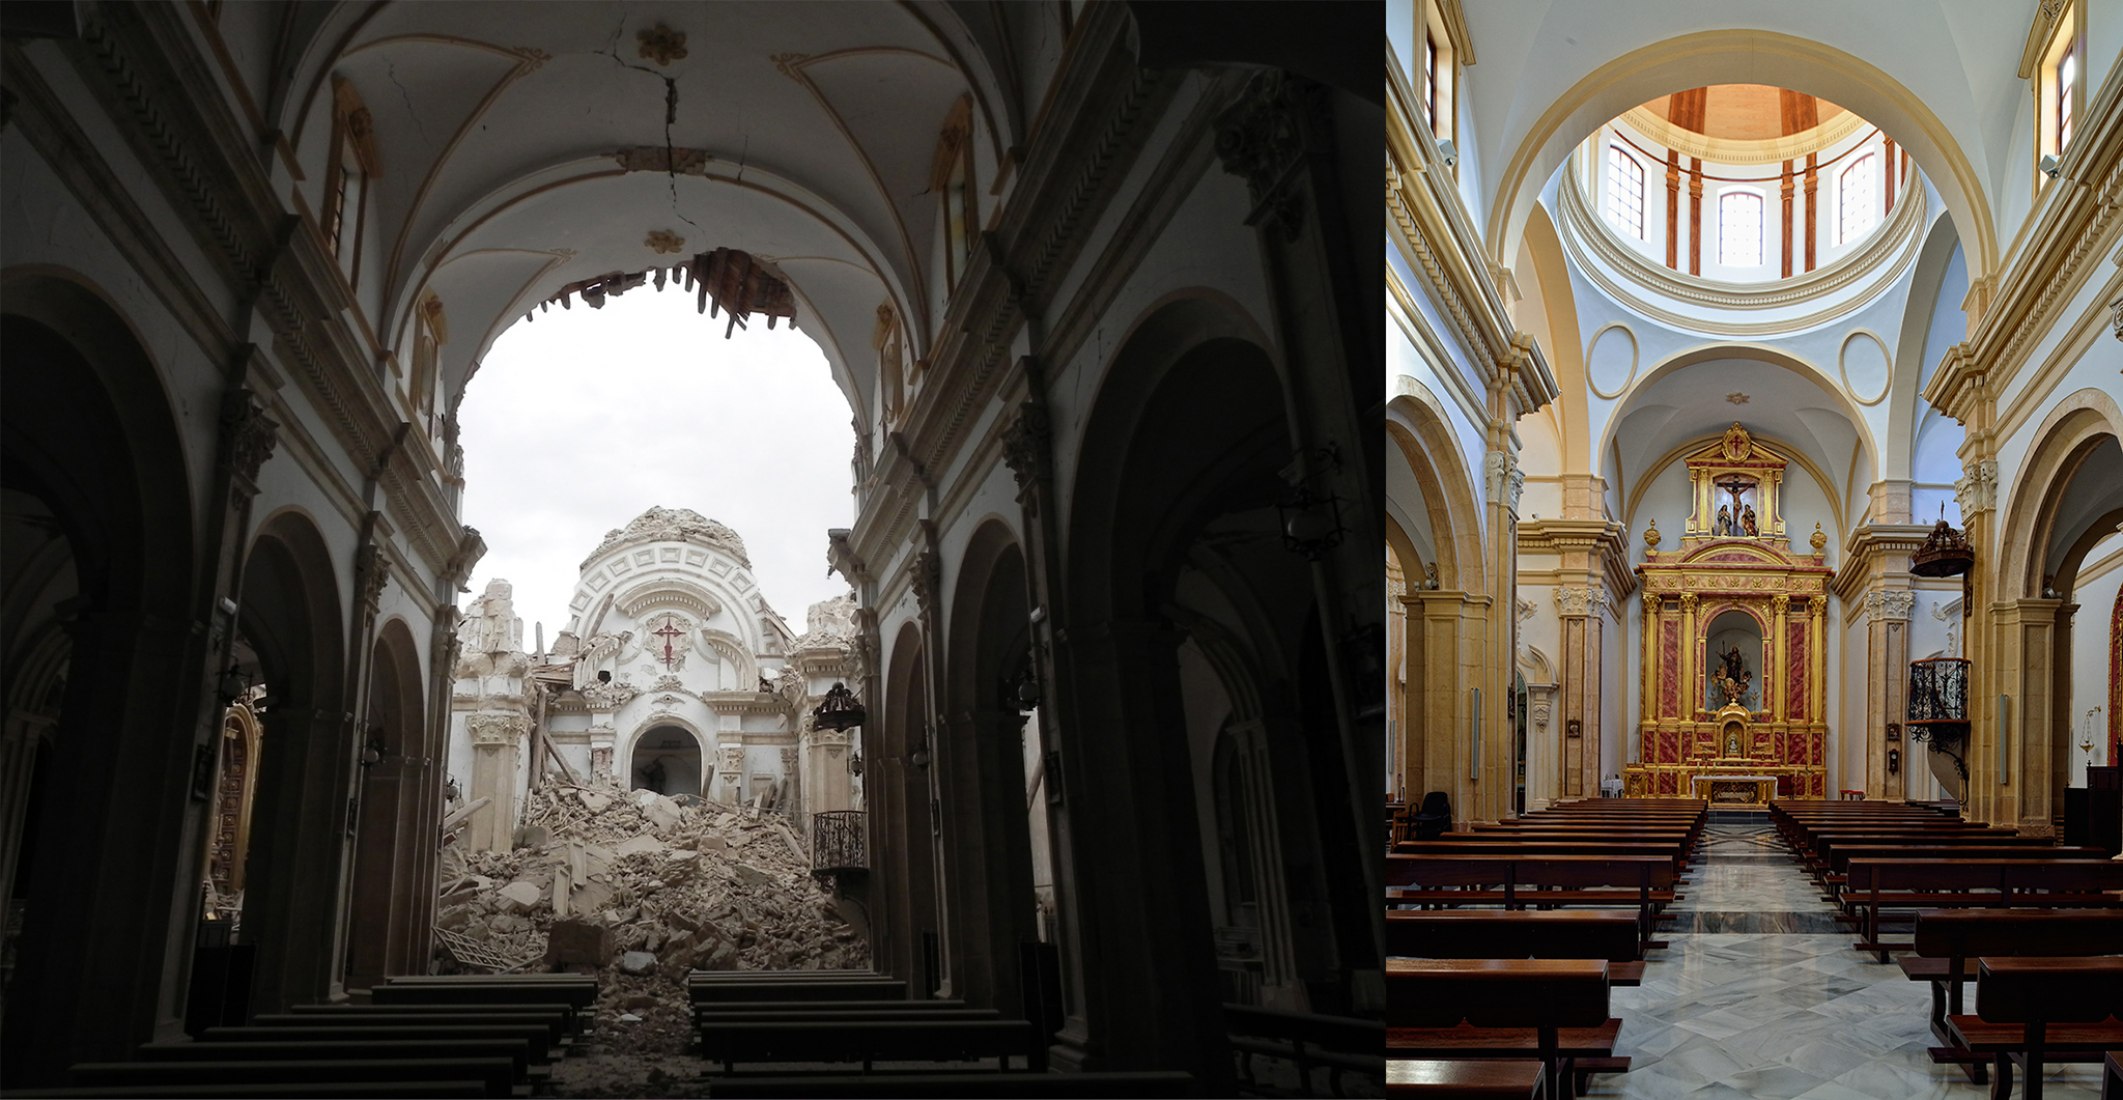 Reconstrucción de la Iglesia de Santiago, Lorca, Murcia, por Juan de Dios de la Hoz. Imagen cortesía de Premio Rafael Manzano